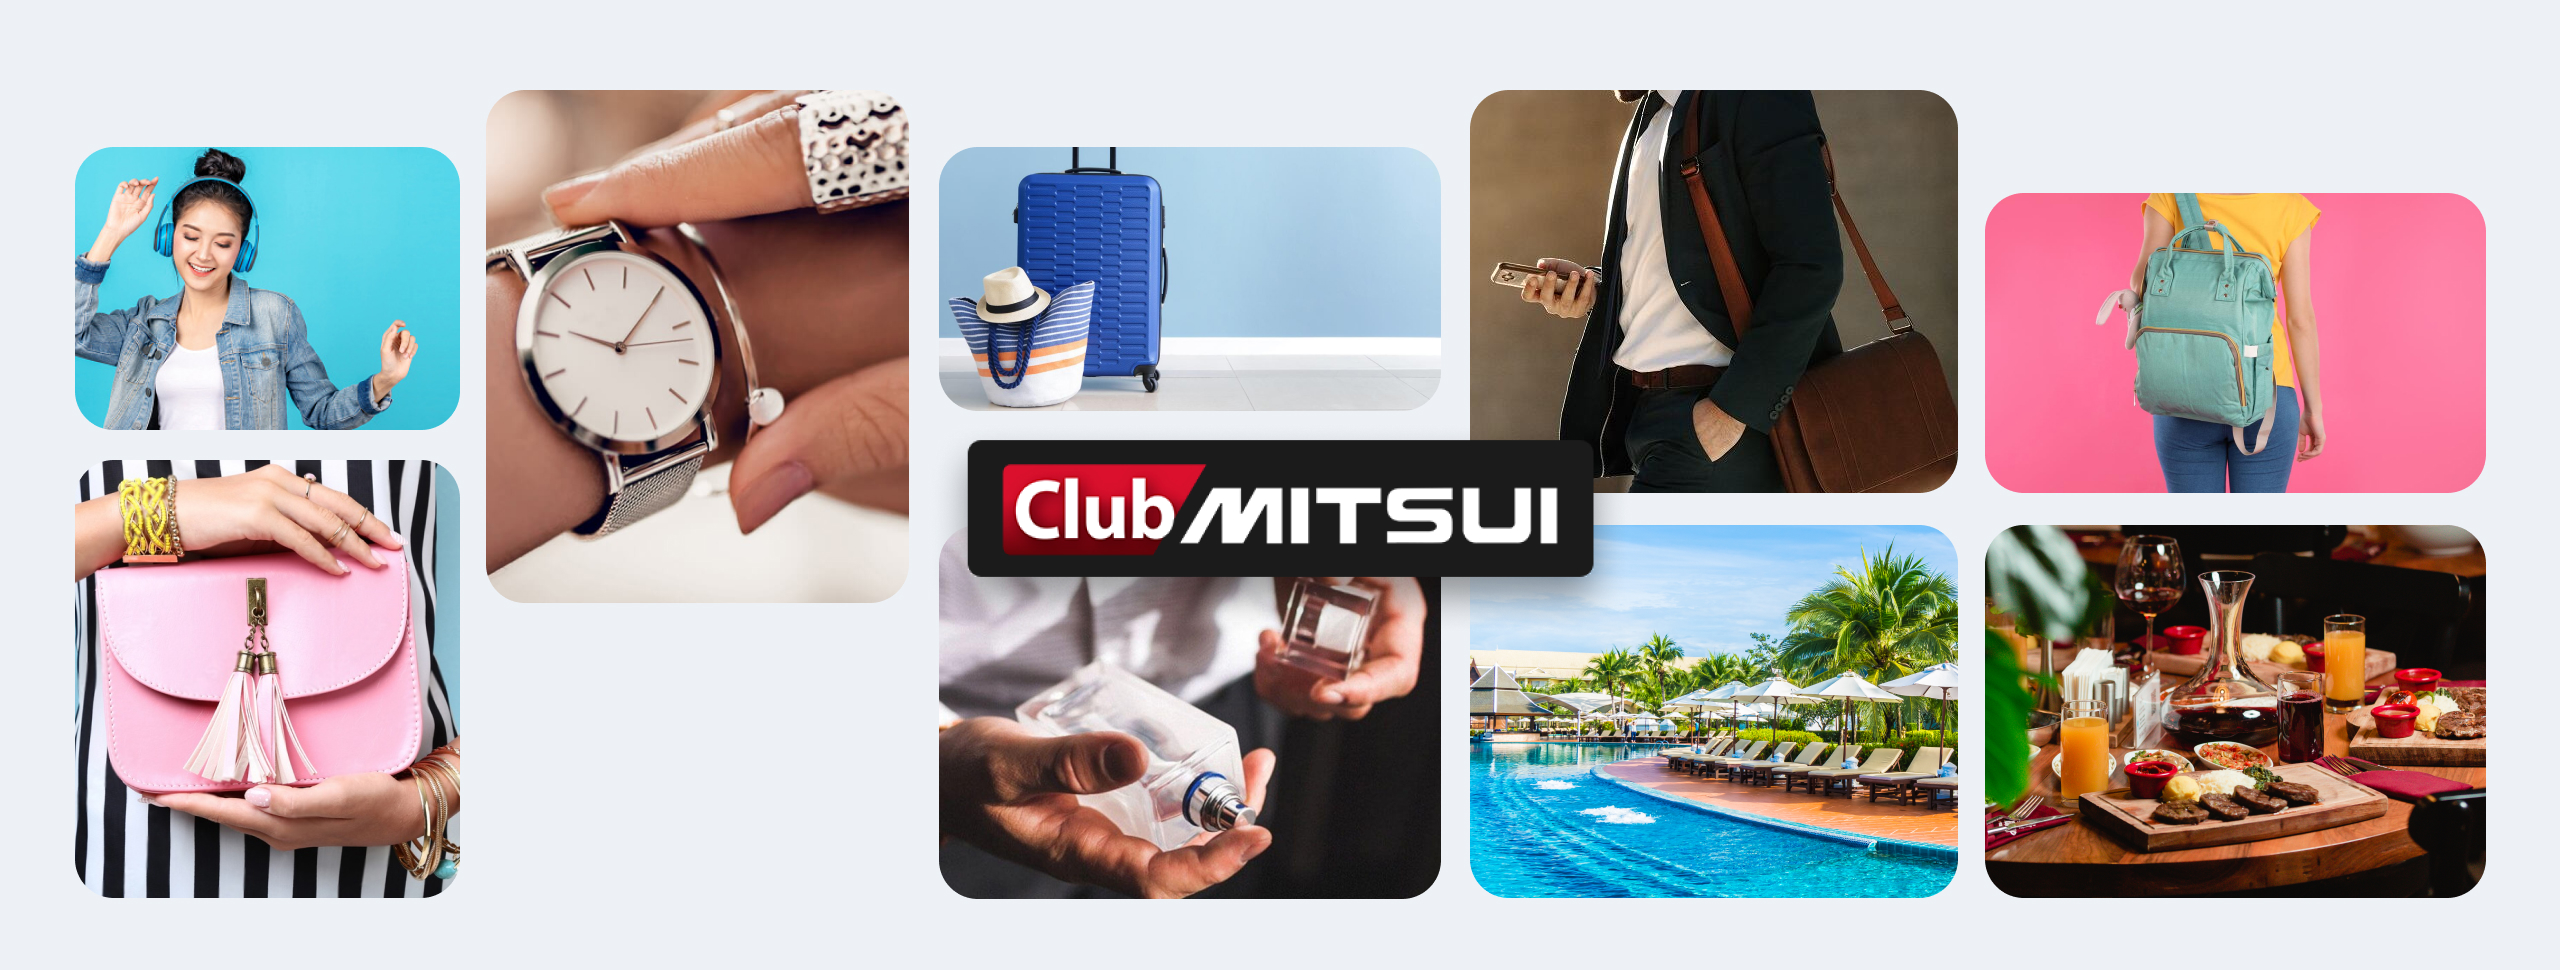 Club Mitsui, se de esta gran familia, redime puntos, canjea en Accesorios para ti, tu carro y familia. Imagen para Desktop